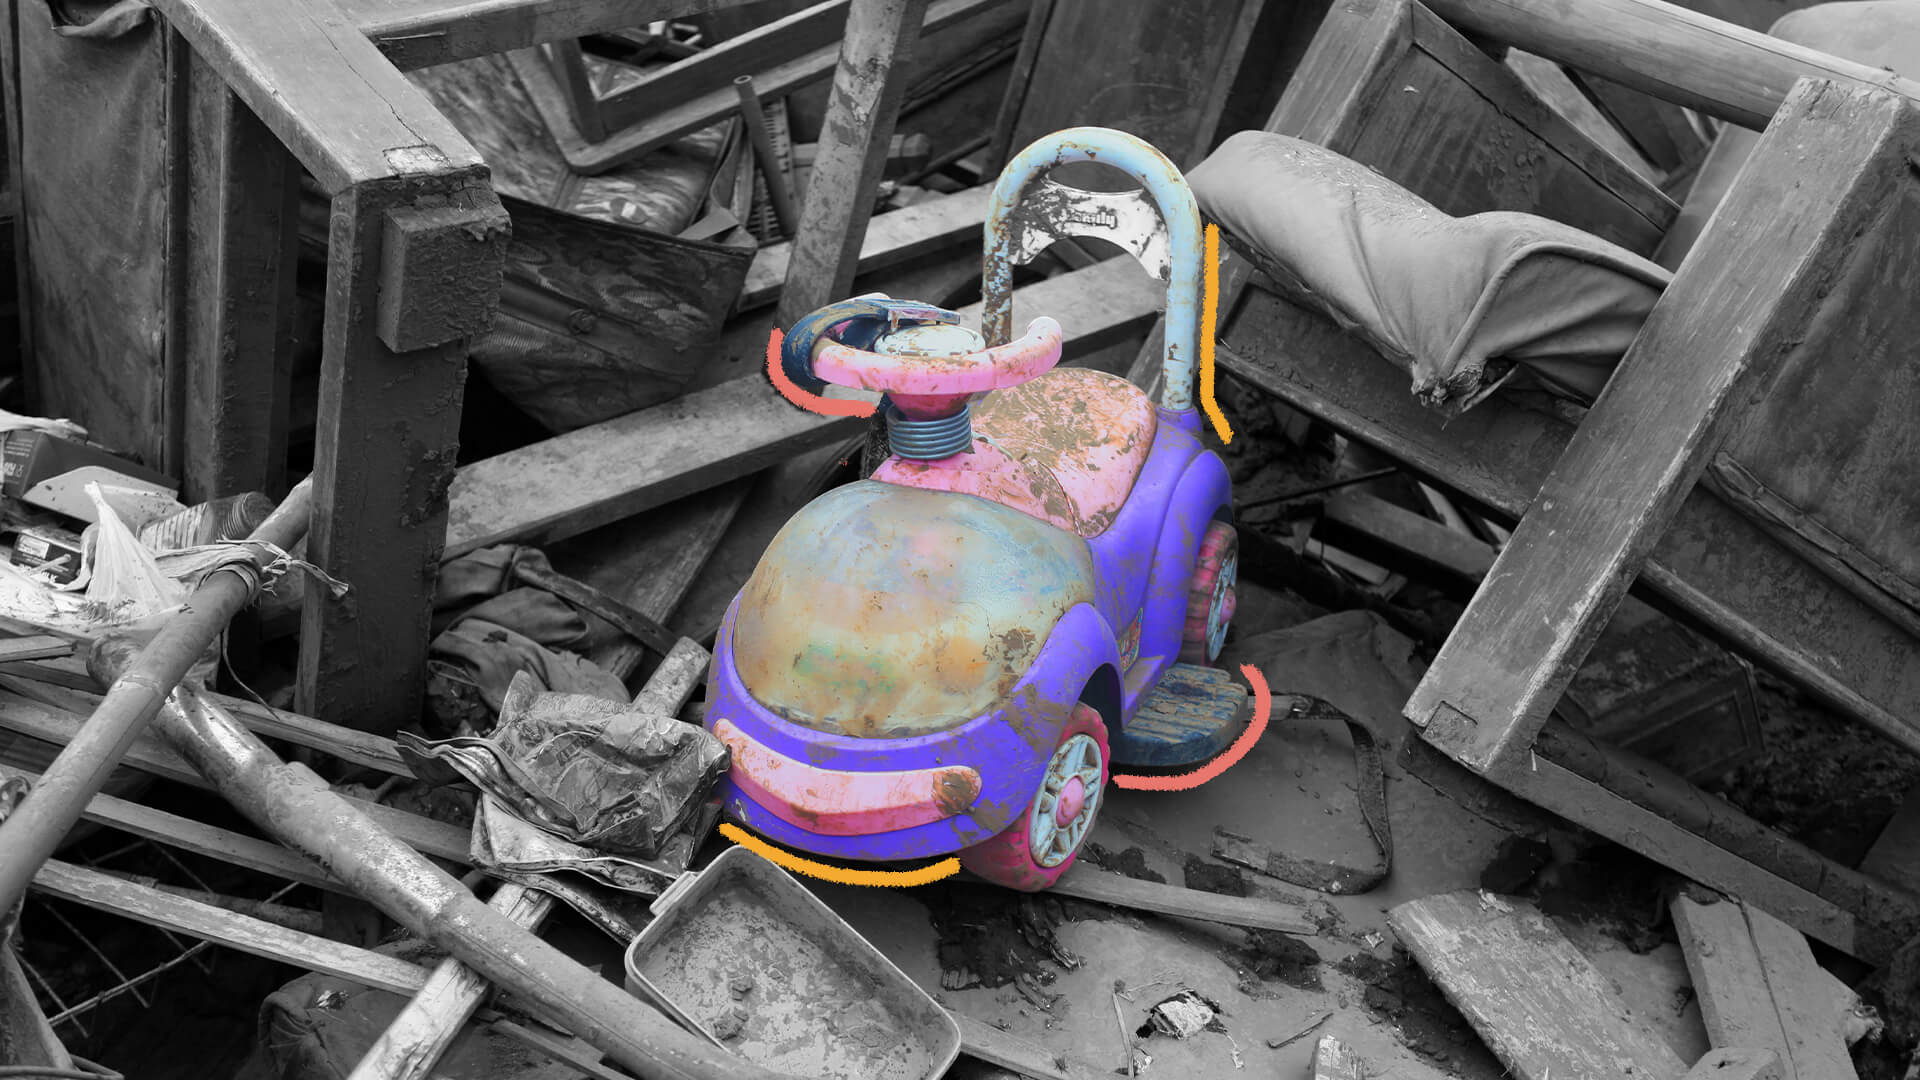 Um carrinho de brinquedo está em destaque, em cores, em meio a casas destruídas, em preto e branco